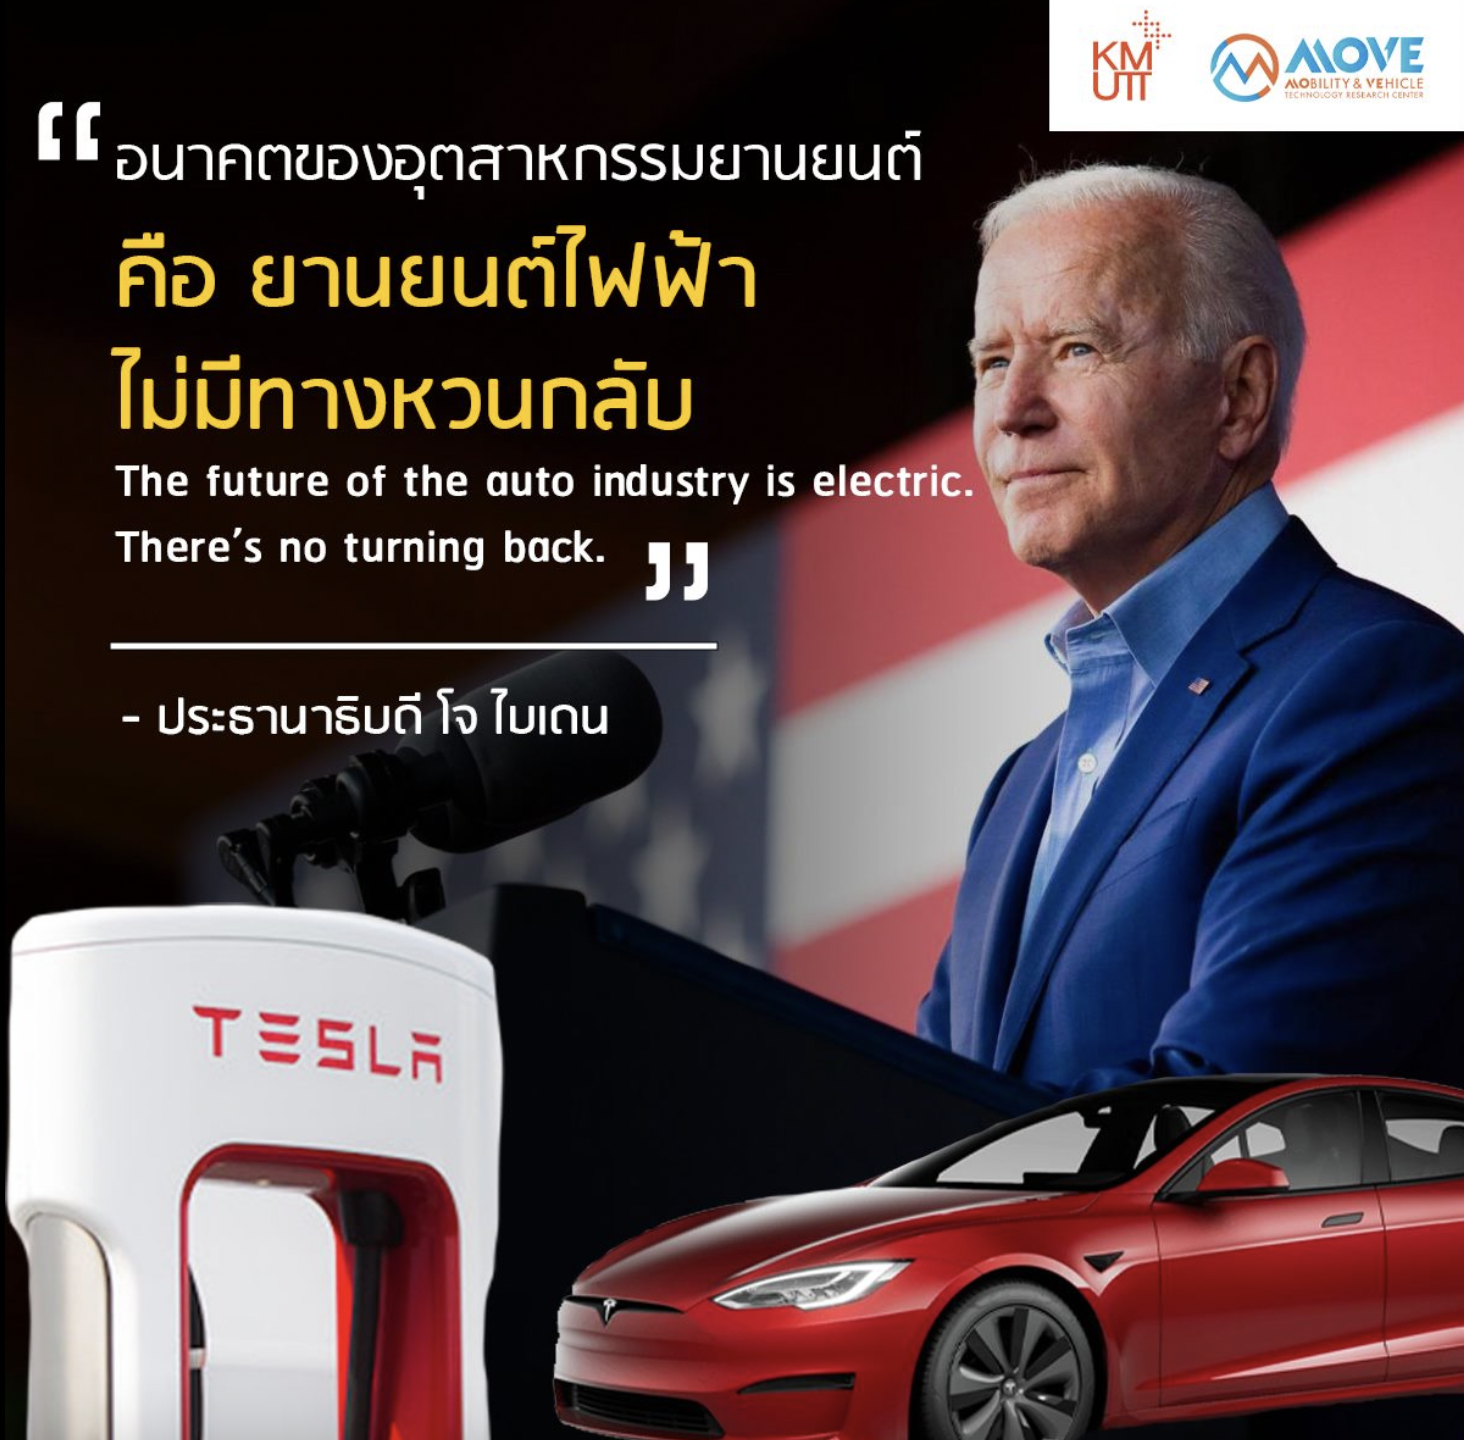 “อนาคตของอุตสาหกรรมยานยนต์คือ ยานยนต์ไฟฟ้า ไม่มีทางหวนกลับ”